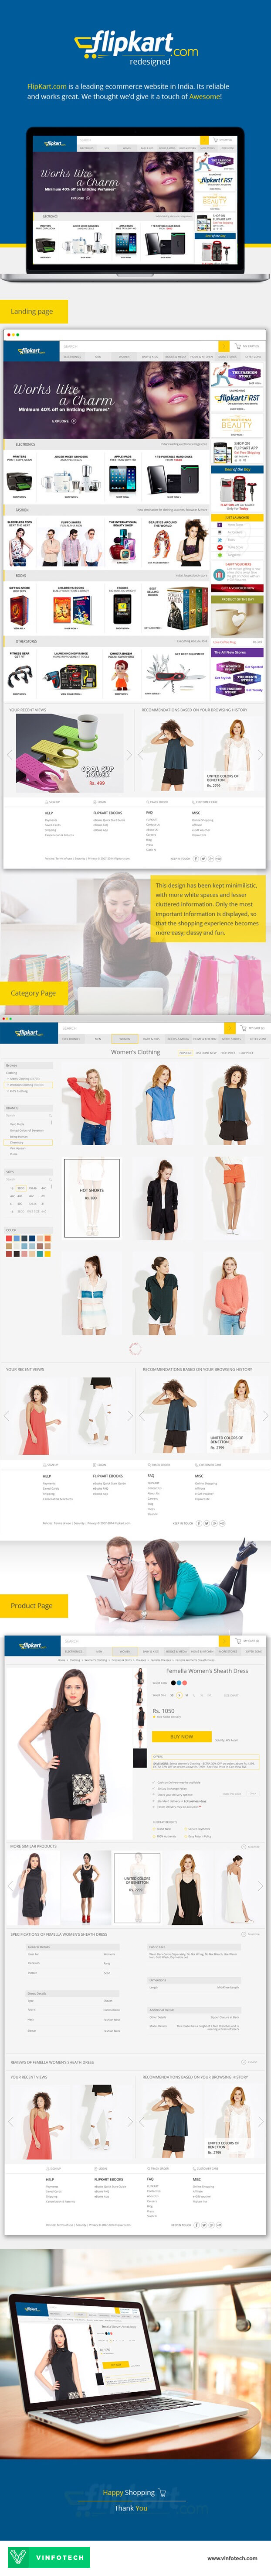 FlipKart Website Concept Redesign by Vinfotech